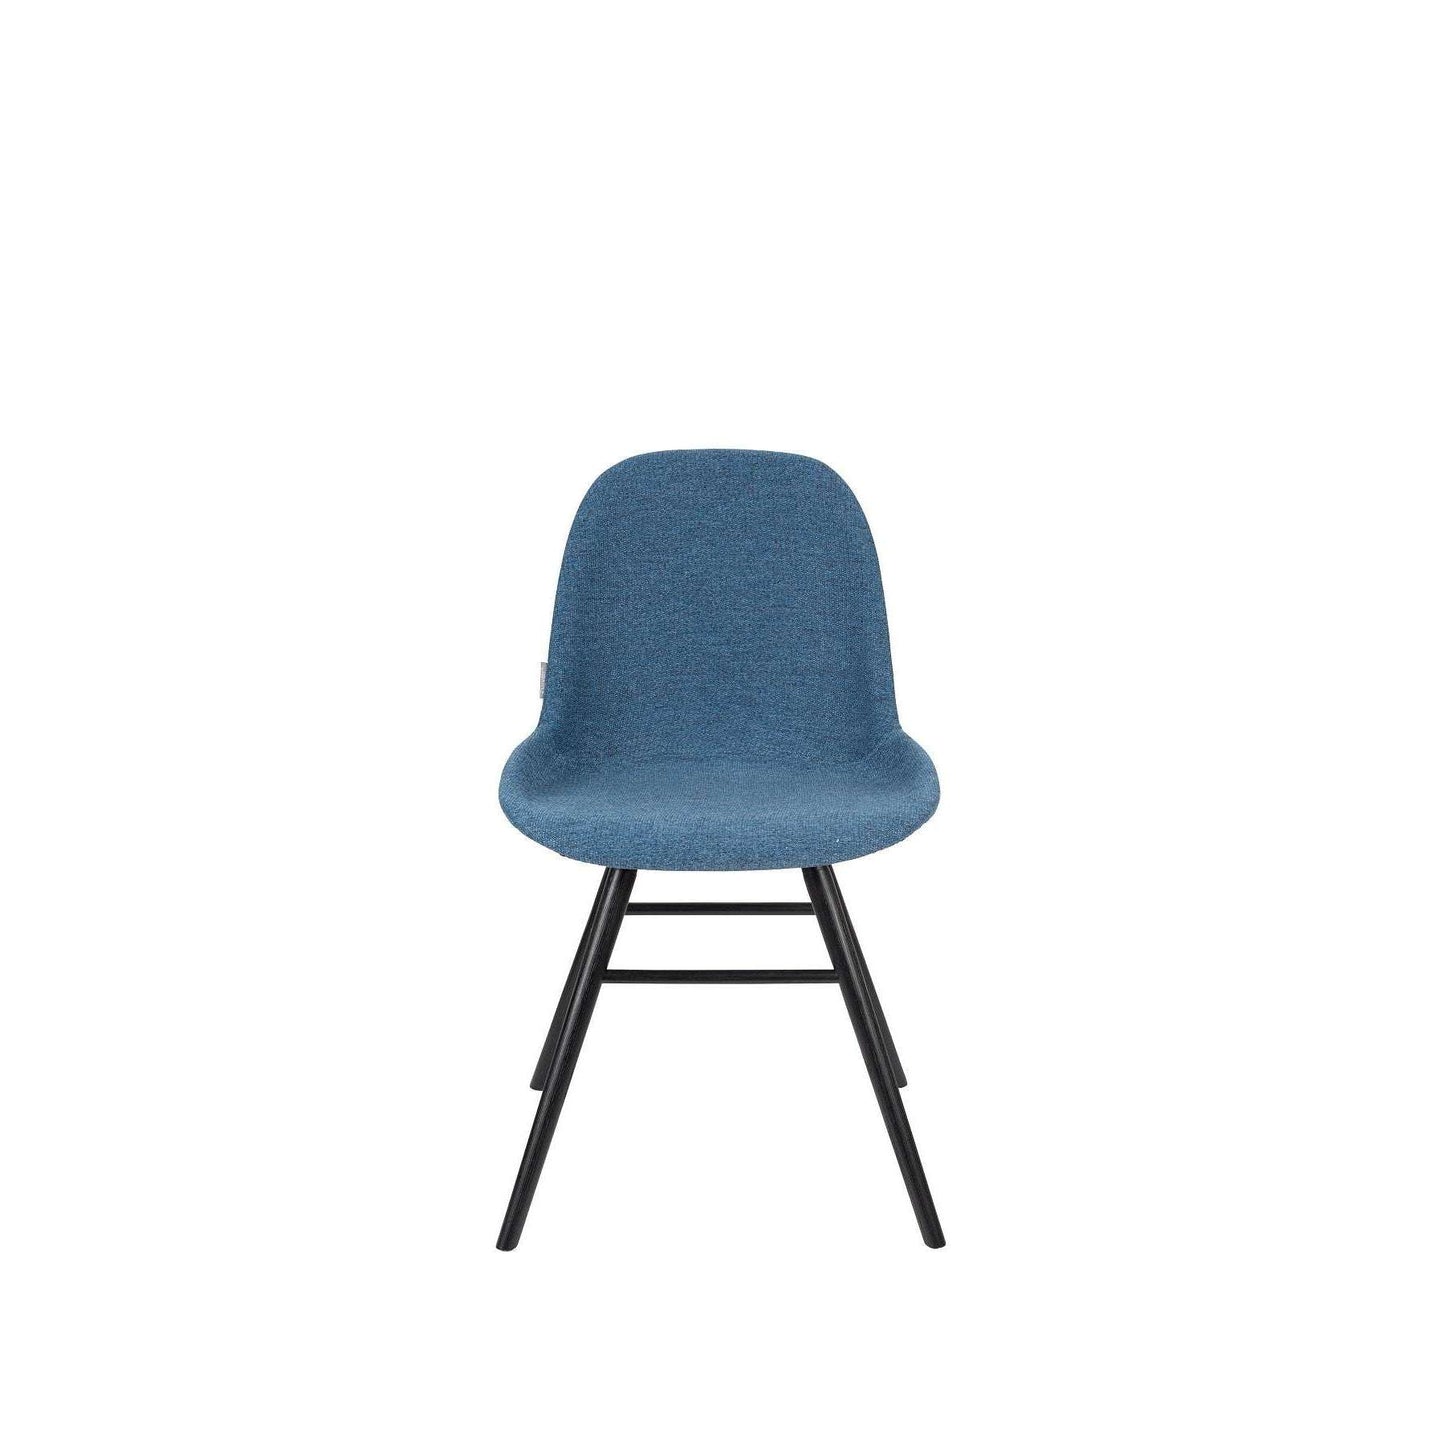 Zuiver stoel albert kuip soft blauw 55 x 49 x 81,5 cm